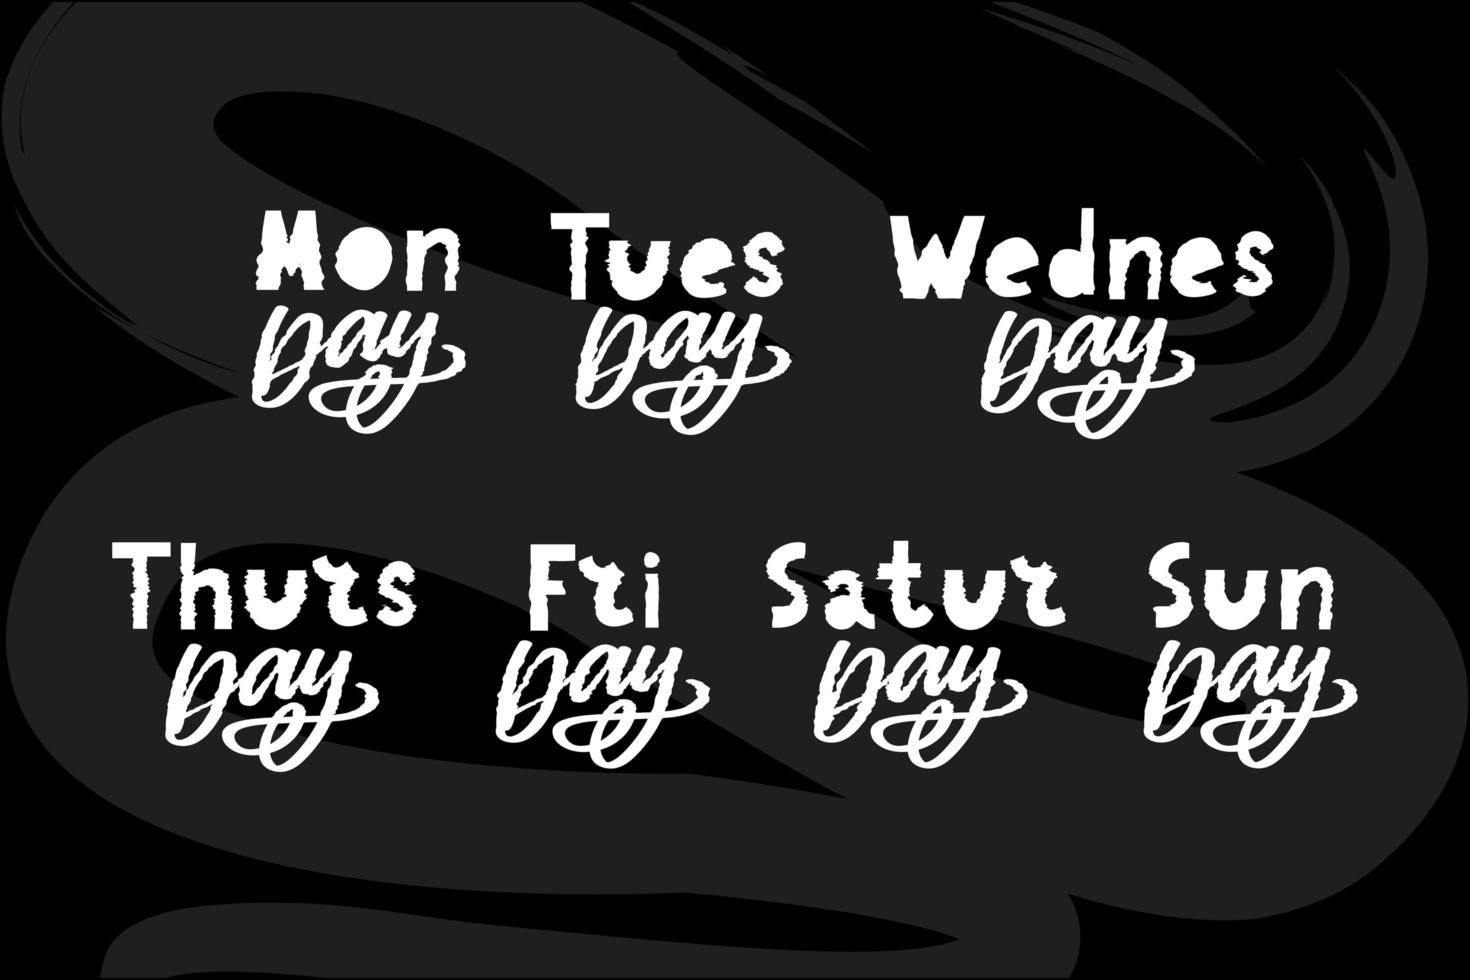 namen van dagen van de week, vintage grunge typografische, ongelijke belettering in stempelstijl voor uw kalenderontwerpen vector